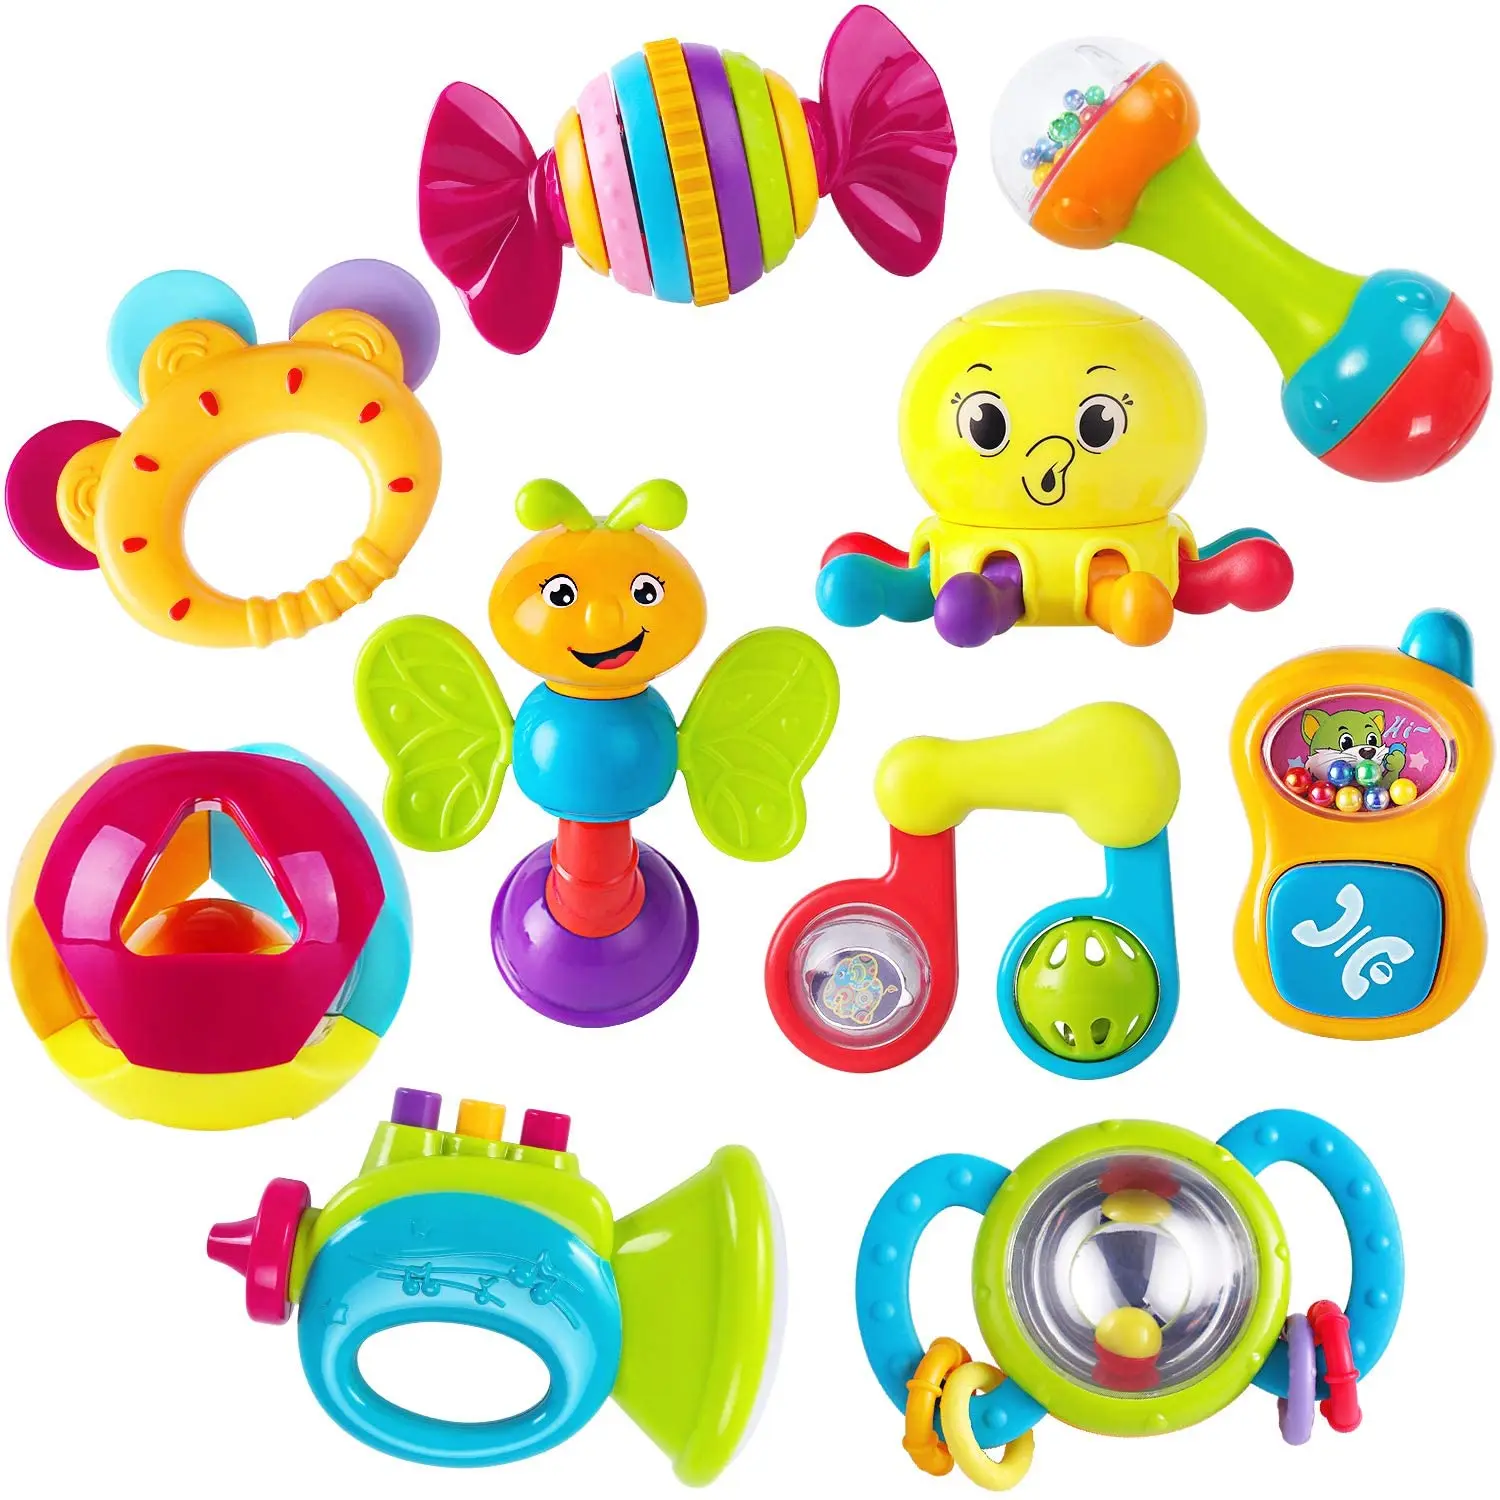 Yooap 10 шт. детская вращающаяся погремушка музыкальный грызунок игрушка ранняя развивающая игрушка набор Игрушки для раннего развития месяц ...